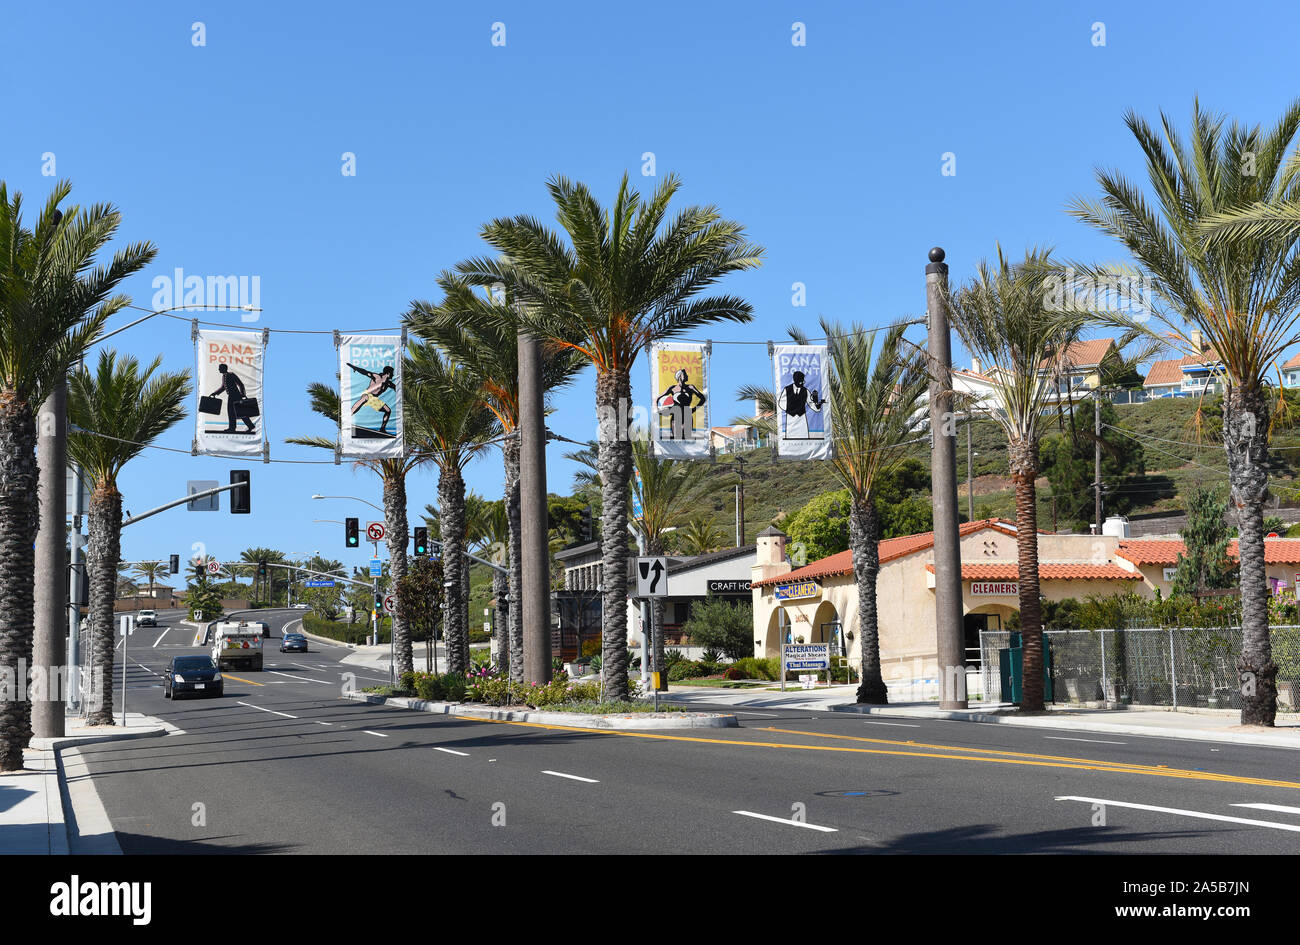 DANA POINT, CALIFORNIE - 18 OCT 2019 : bannières main sur autoroute de la côte Pacifique dans le sud du comté d'Orange Beach Town. Banque D'Images